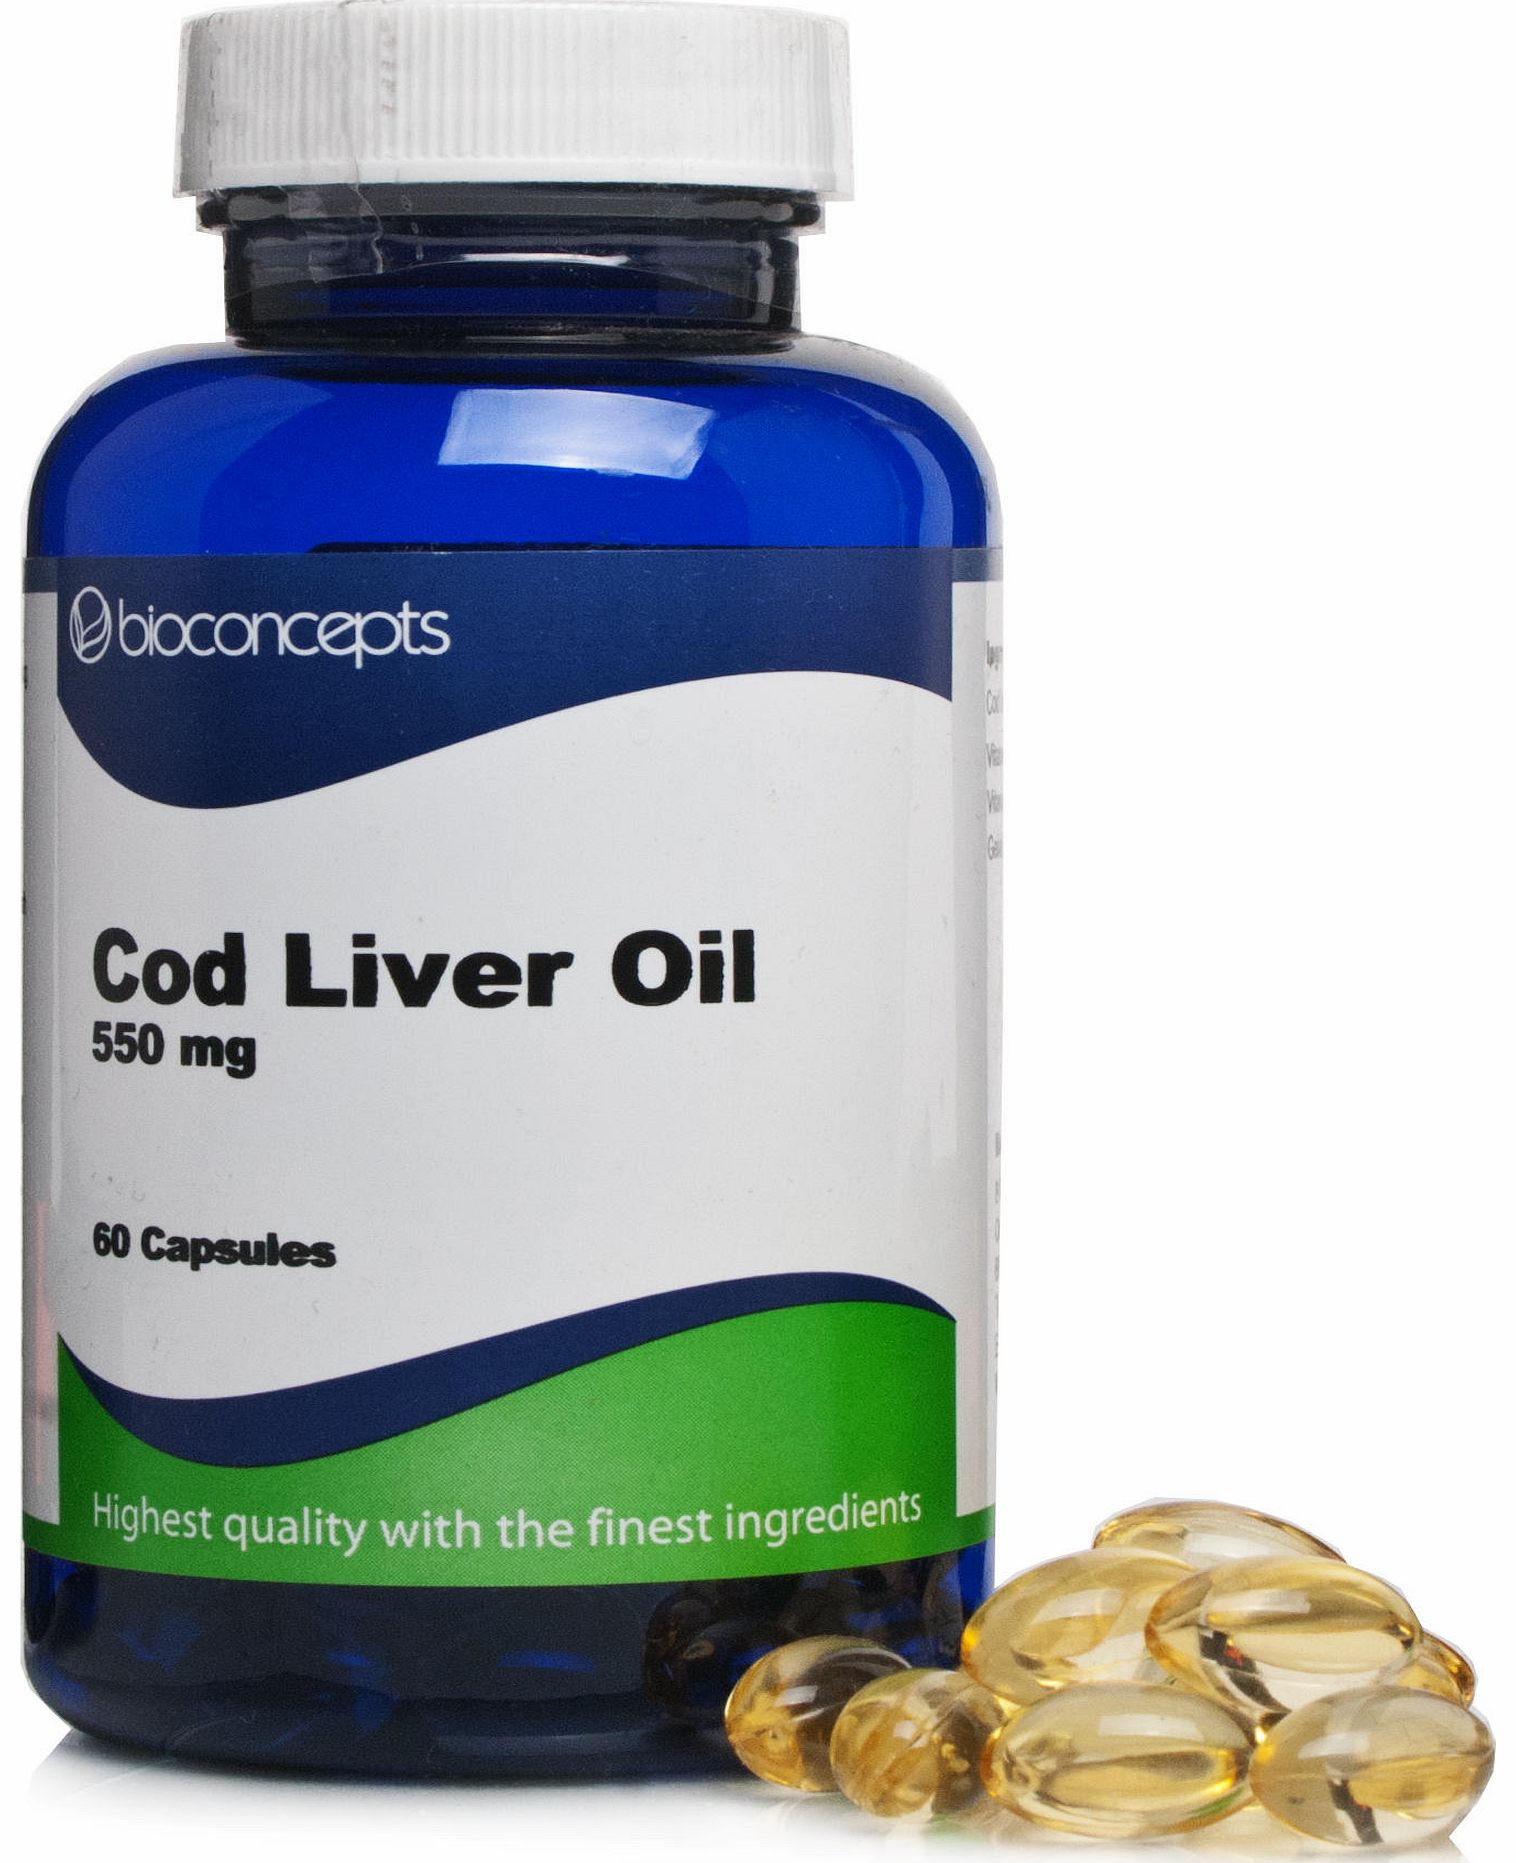 Bioconcepts Cod Liver Oil 550mg